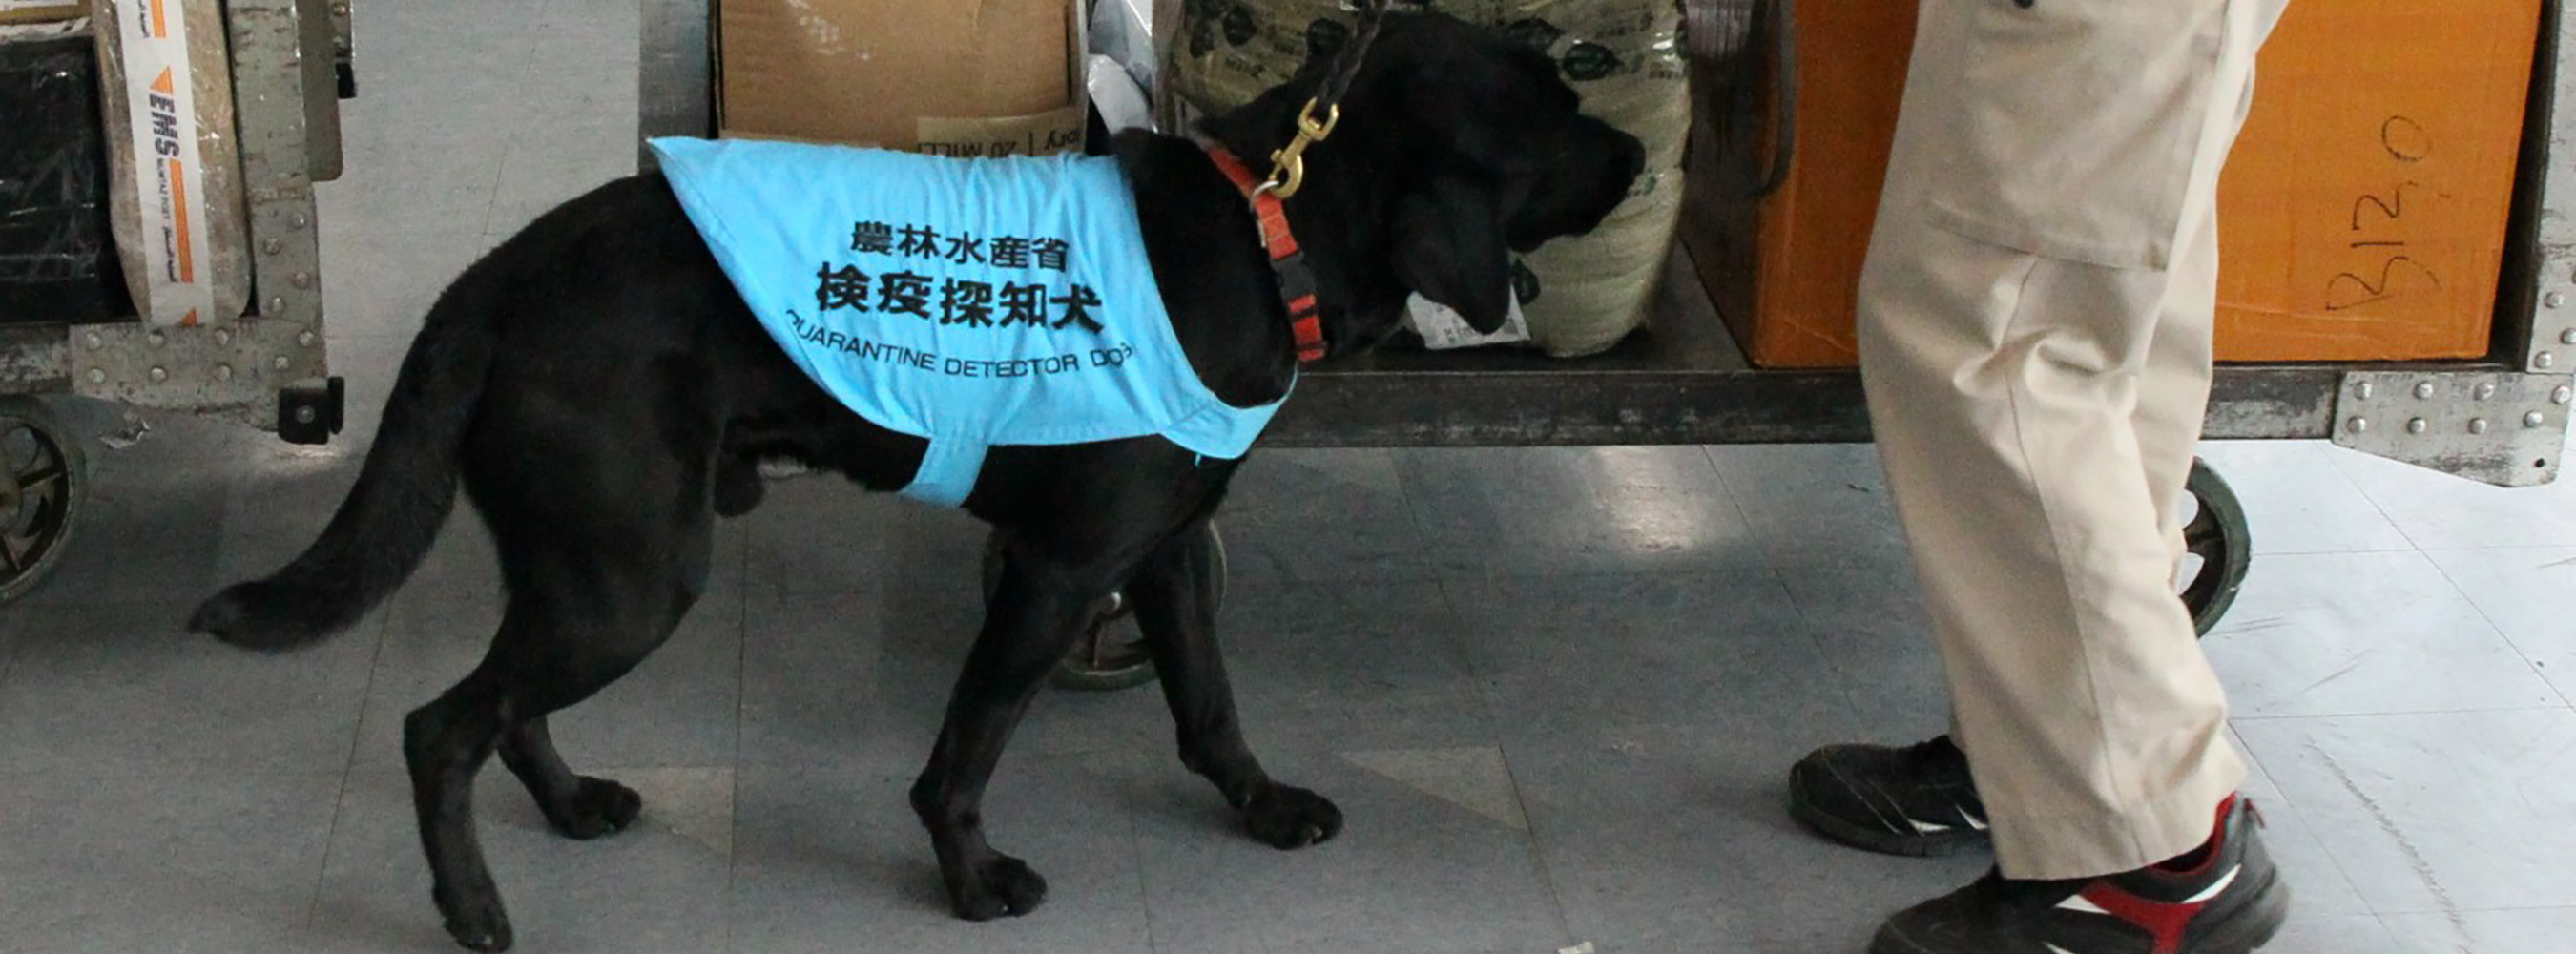 在国际邮局对肉制品和水果等进行检测的动植物检疫探测犬。